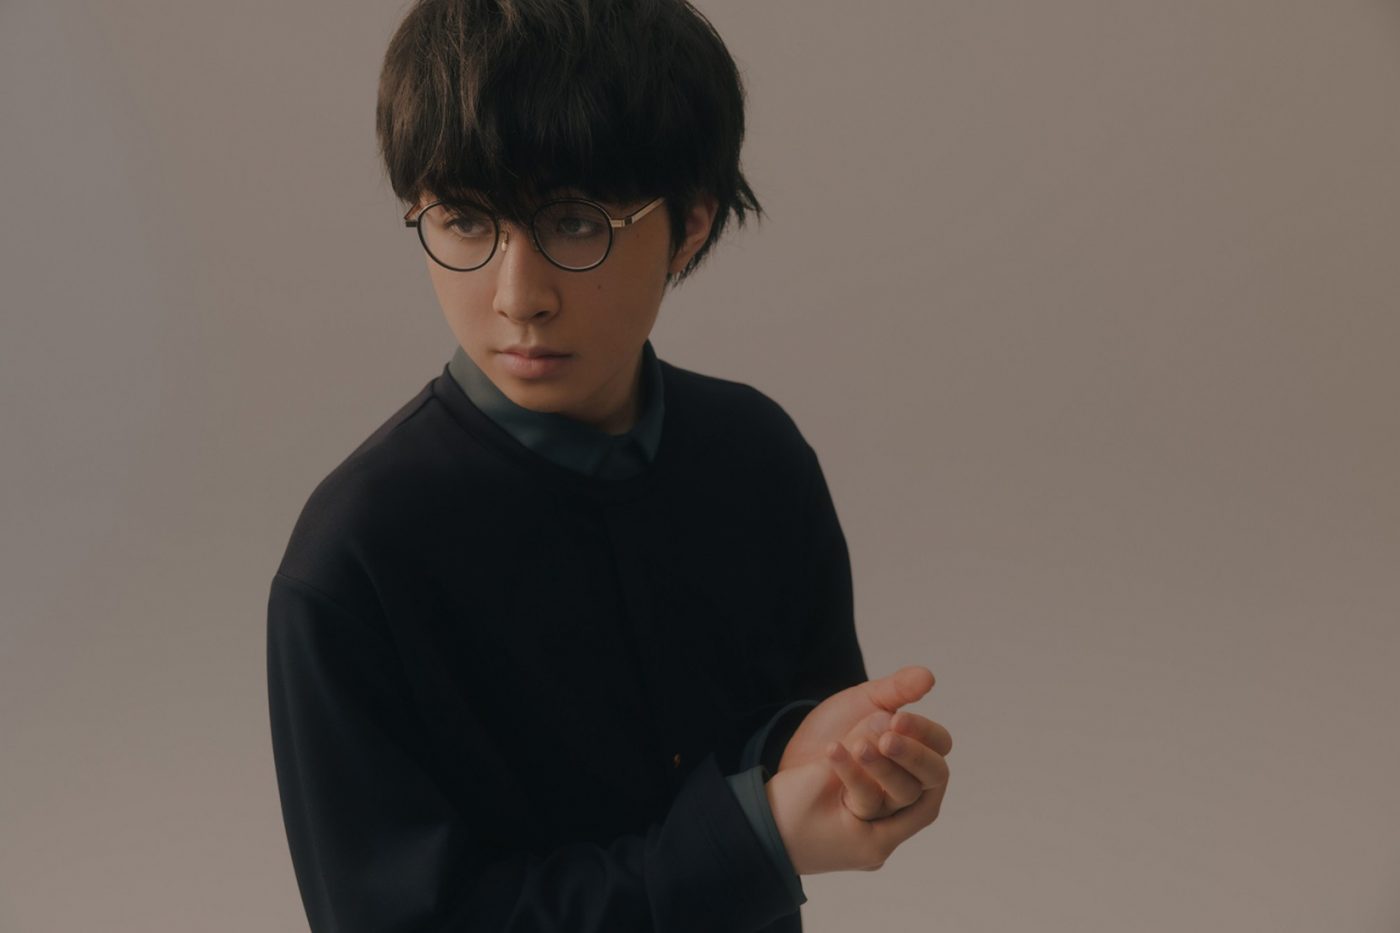 崎山蒼志、ニューシングル「嘘じゃない」の全曲試聴ができるクロスフェード映像公開